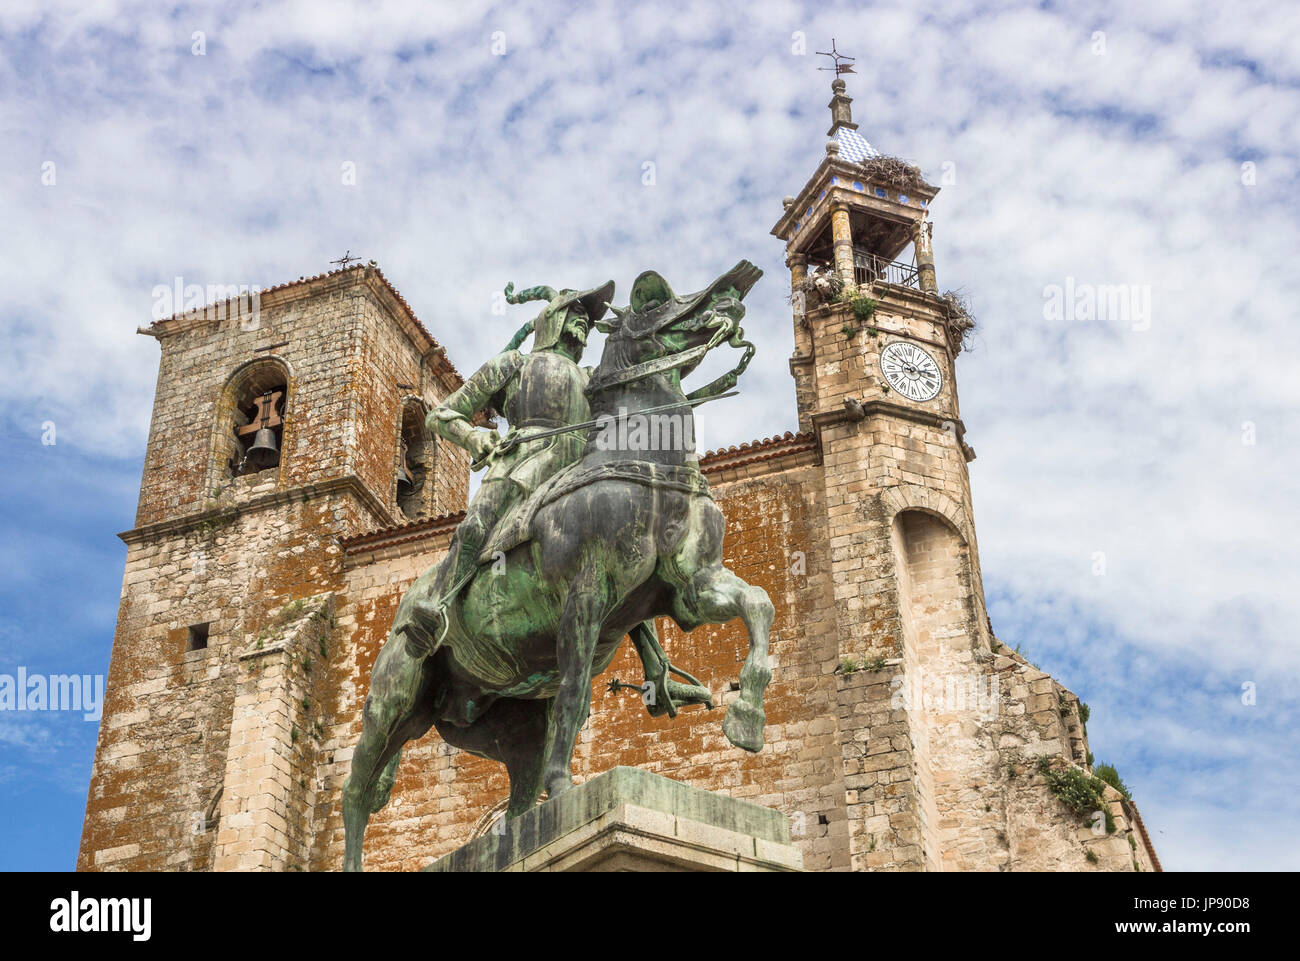 Spain, Extremadura Region, Trujillo City, Pizarro Statue Stock Photo